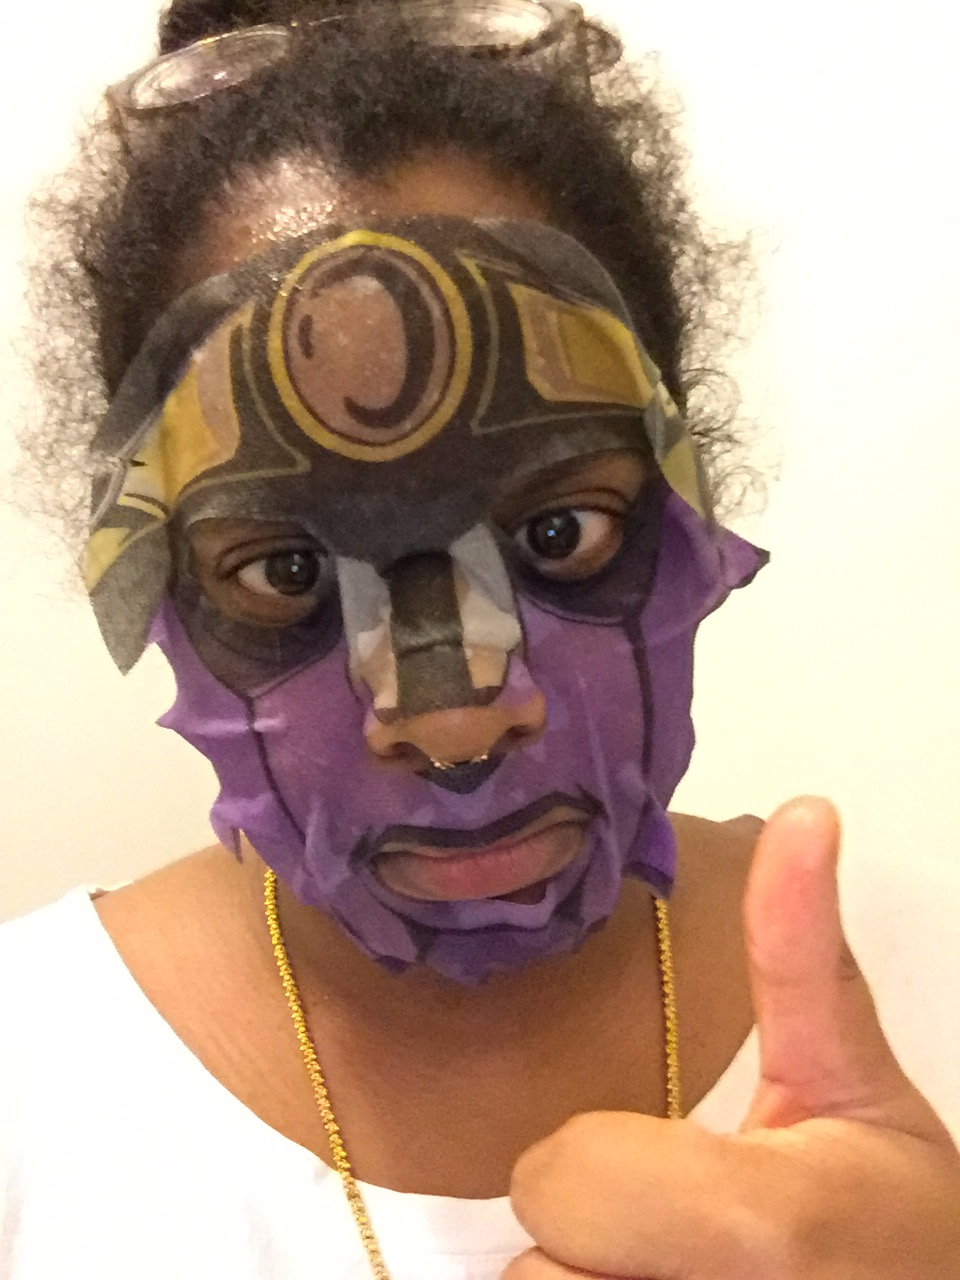 JoJo’s Bizarre Adventure Face Masks Are Also A Bizarre Adventure